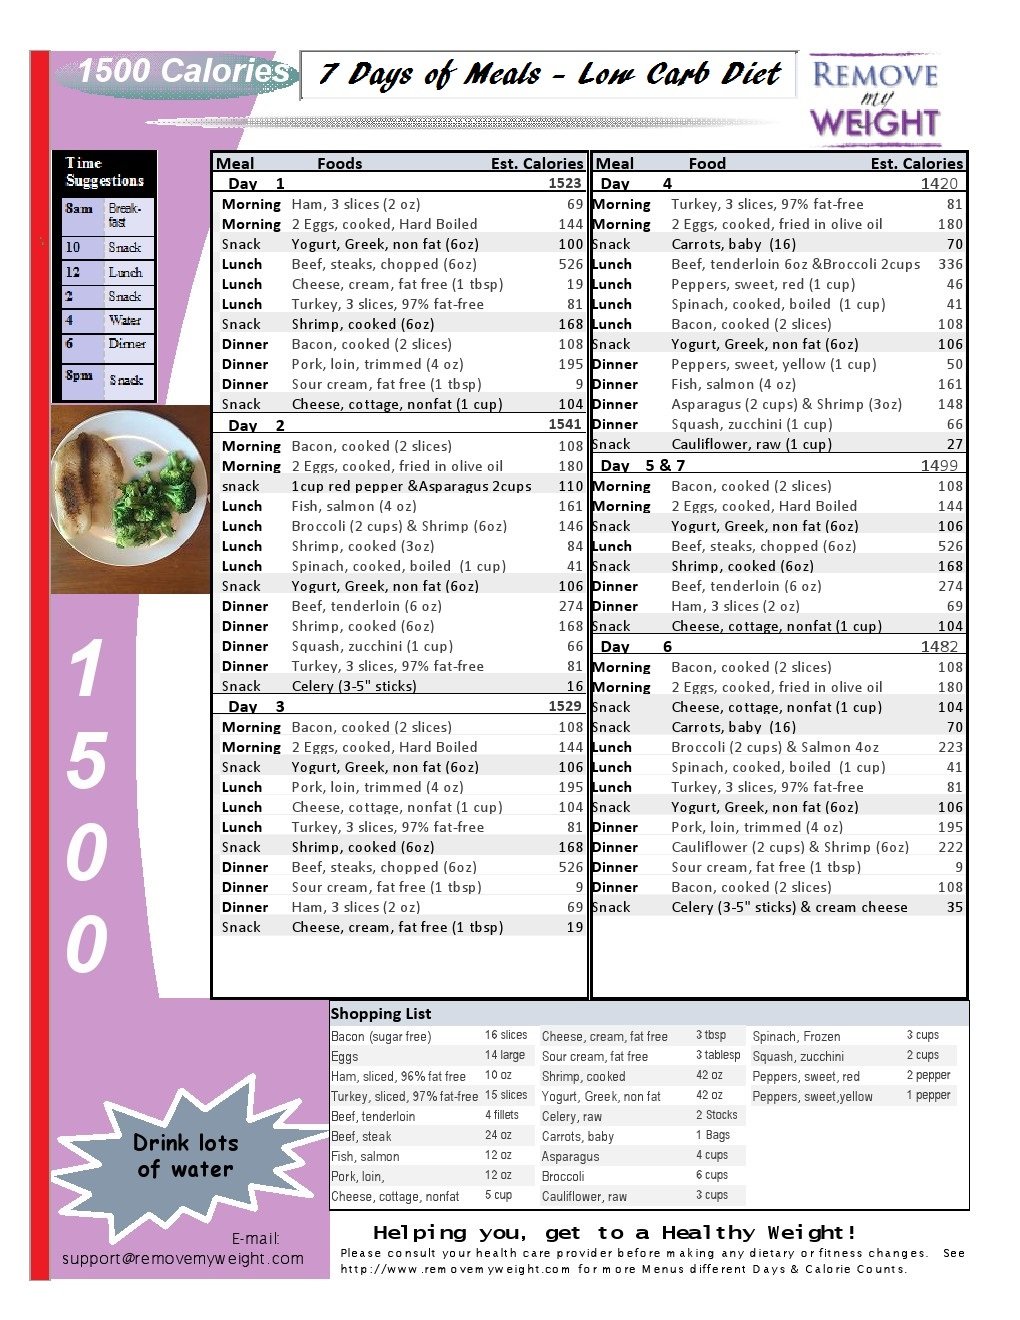 sample 1200 calorie meal plan low carb